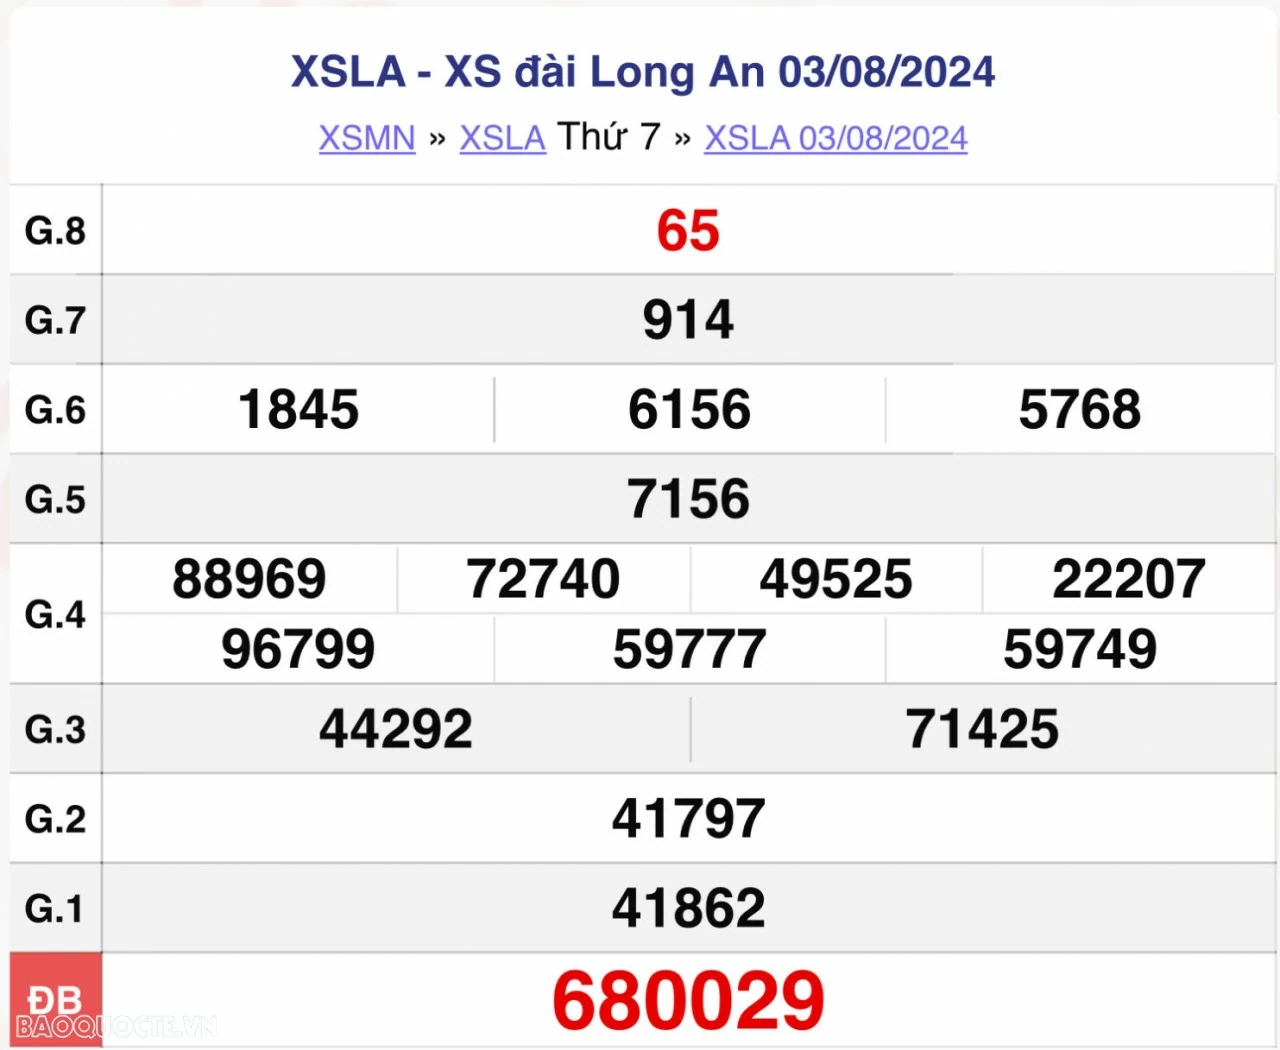 XSLA 3/8, kết quả xổ số Long An thứ 7 ngày 3/8/2024. xổ số Long An ngày 3 tháng 8